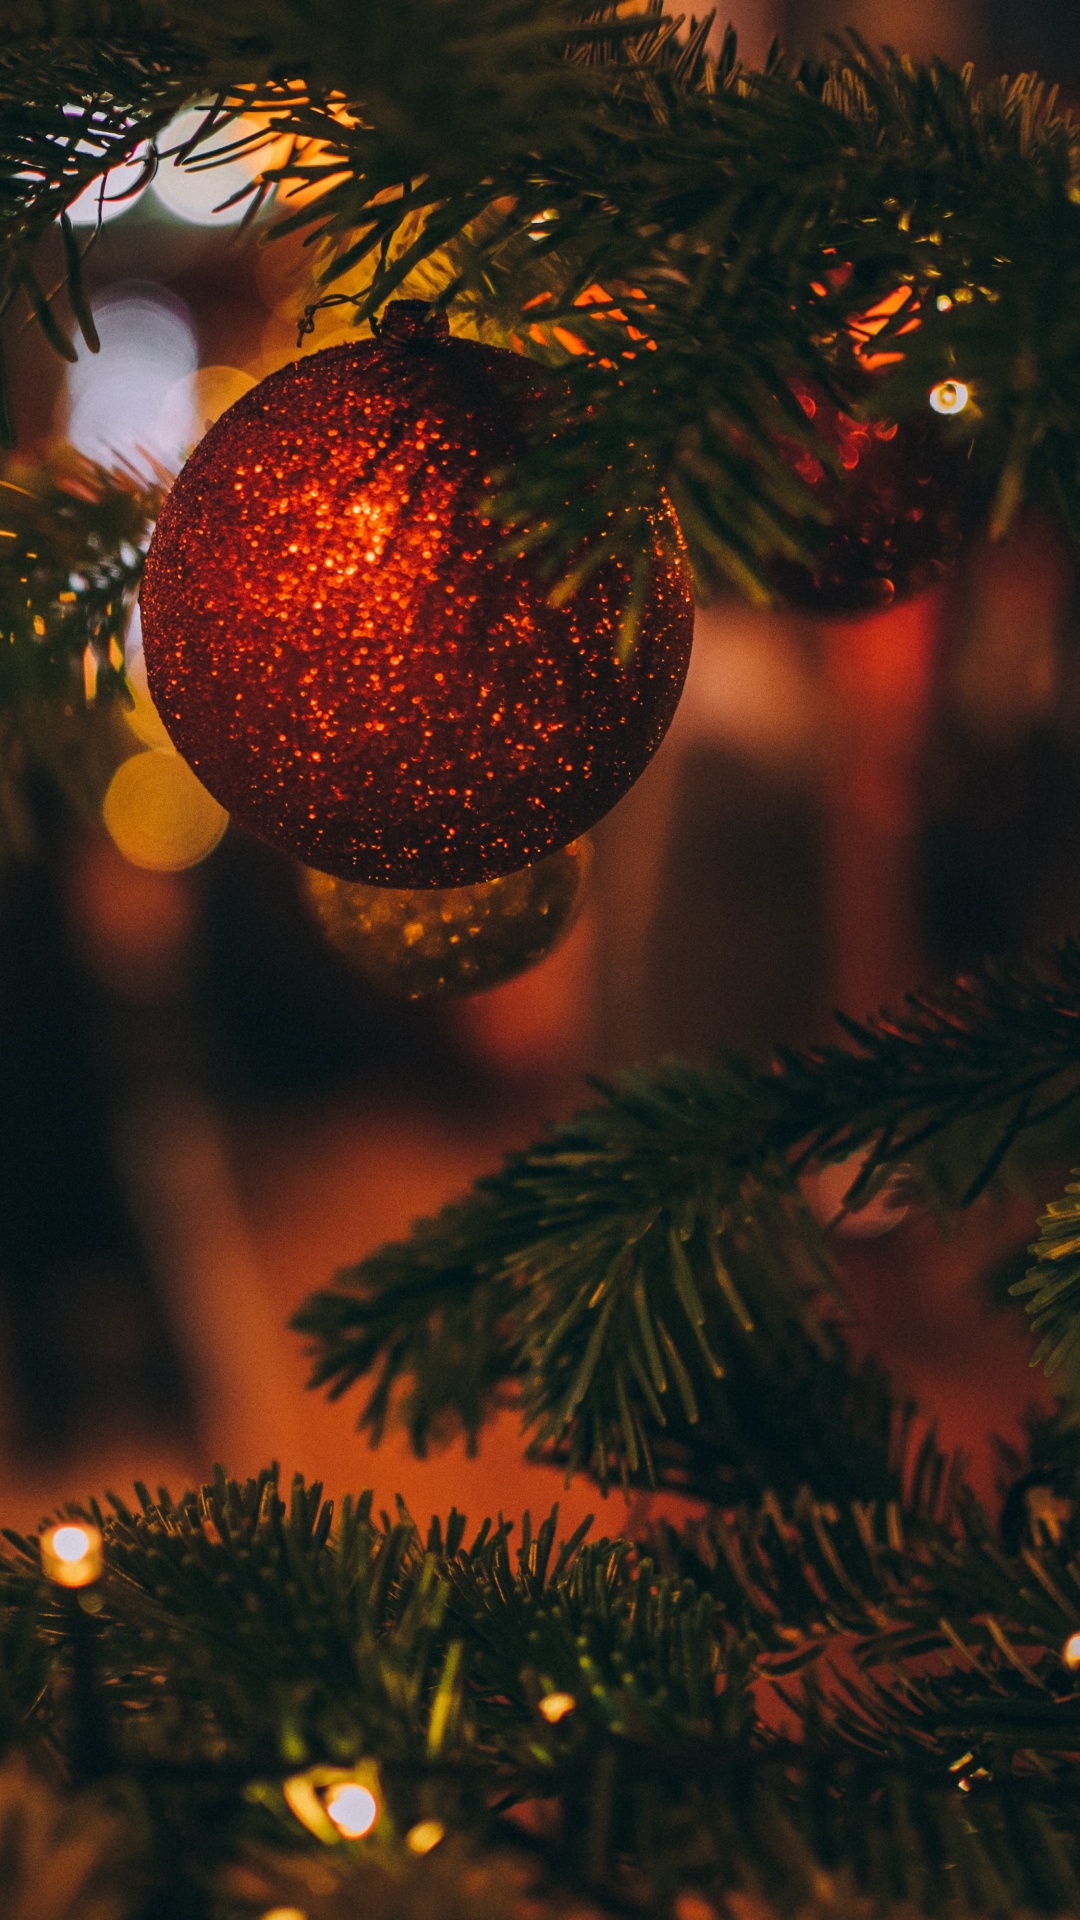 圣诞节那天, 圣诞树, 圣诞节的装饰品, 圣诞节, 云杉 壁纸 1080x1920 允许